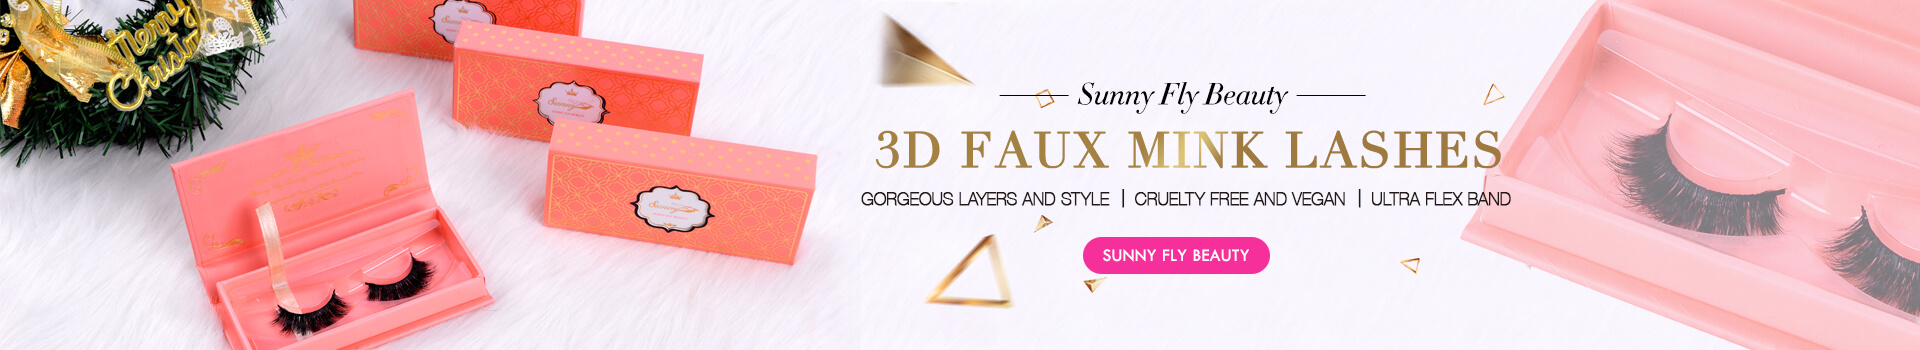 3D Faux Mink Lashes SD72